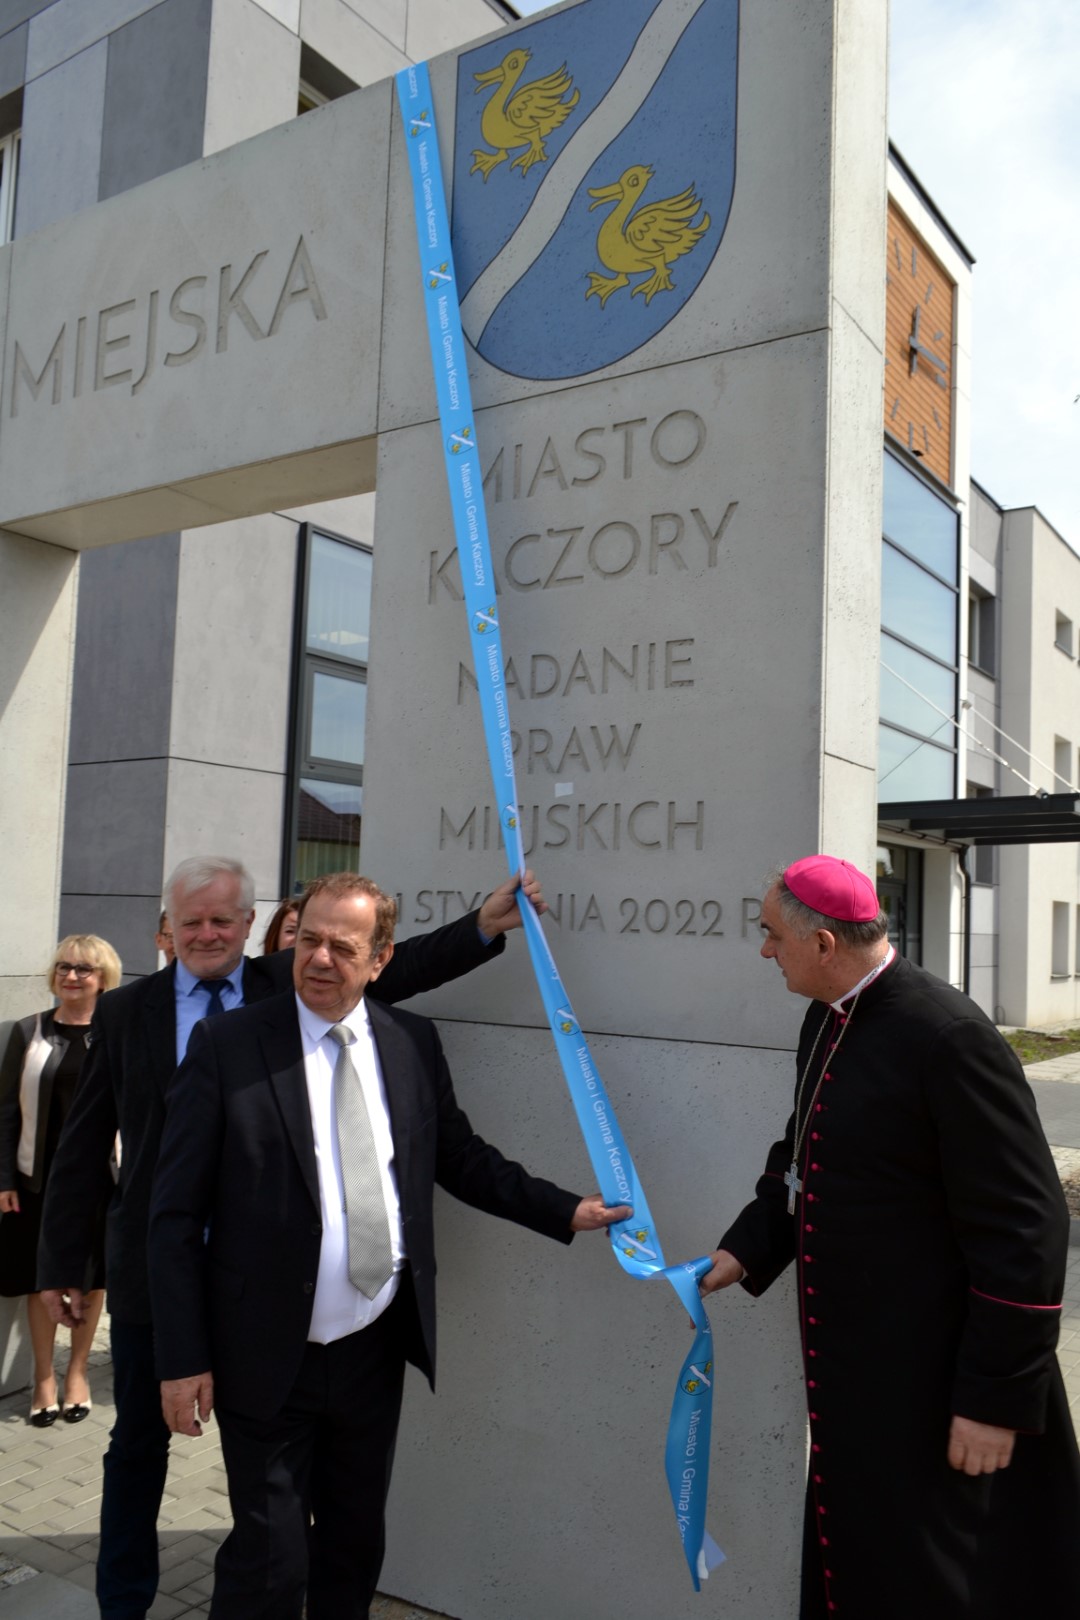 Na zdjęciu widać burmistrza Brunona Wolskiego, ks. biskupa Krzysztofa Włodarczyka i przewodniczącego rady miasta i gminy Stefana Kowala obok bramy miejskiej.